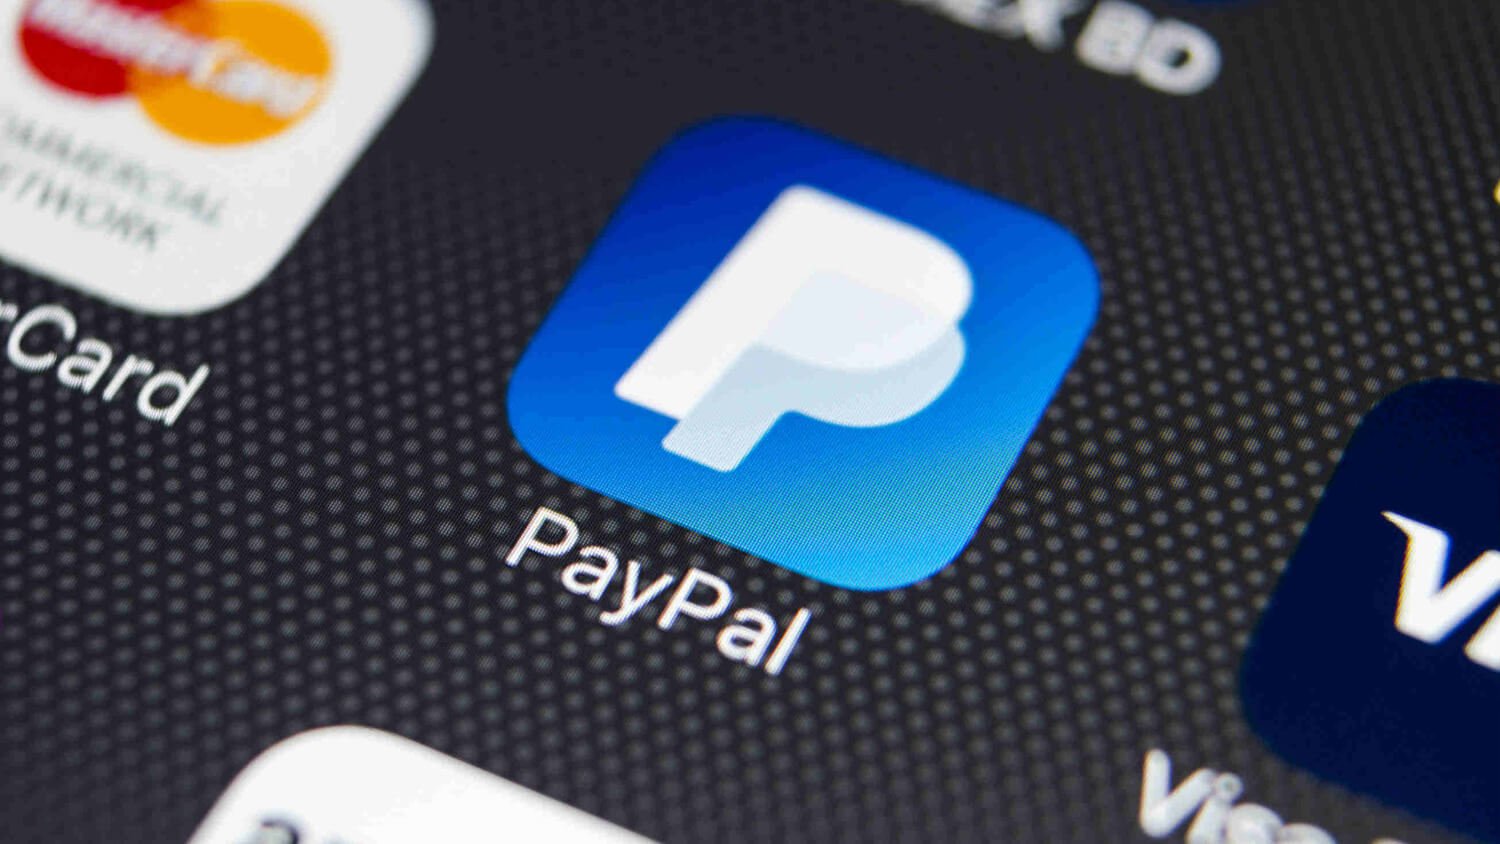 Купит ли PayPal Биткоин? Логотип PayPal. Фото.